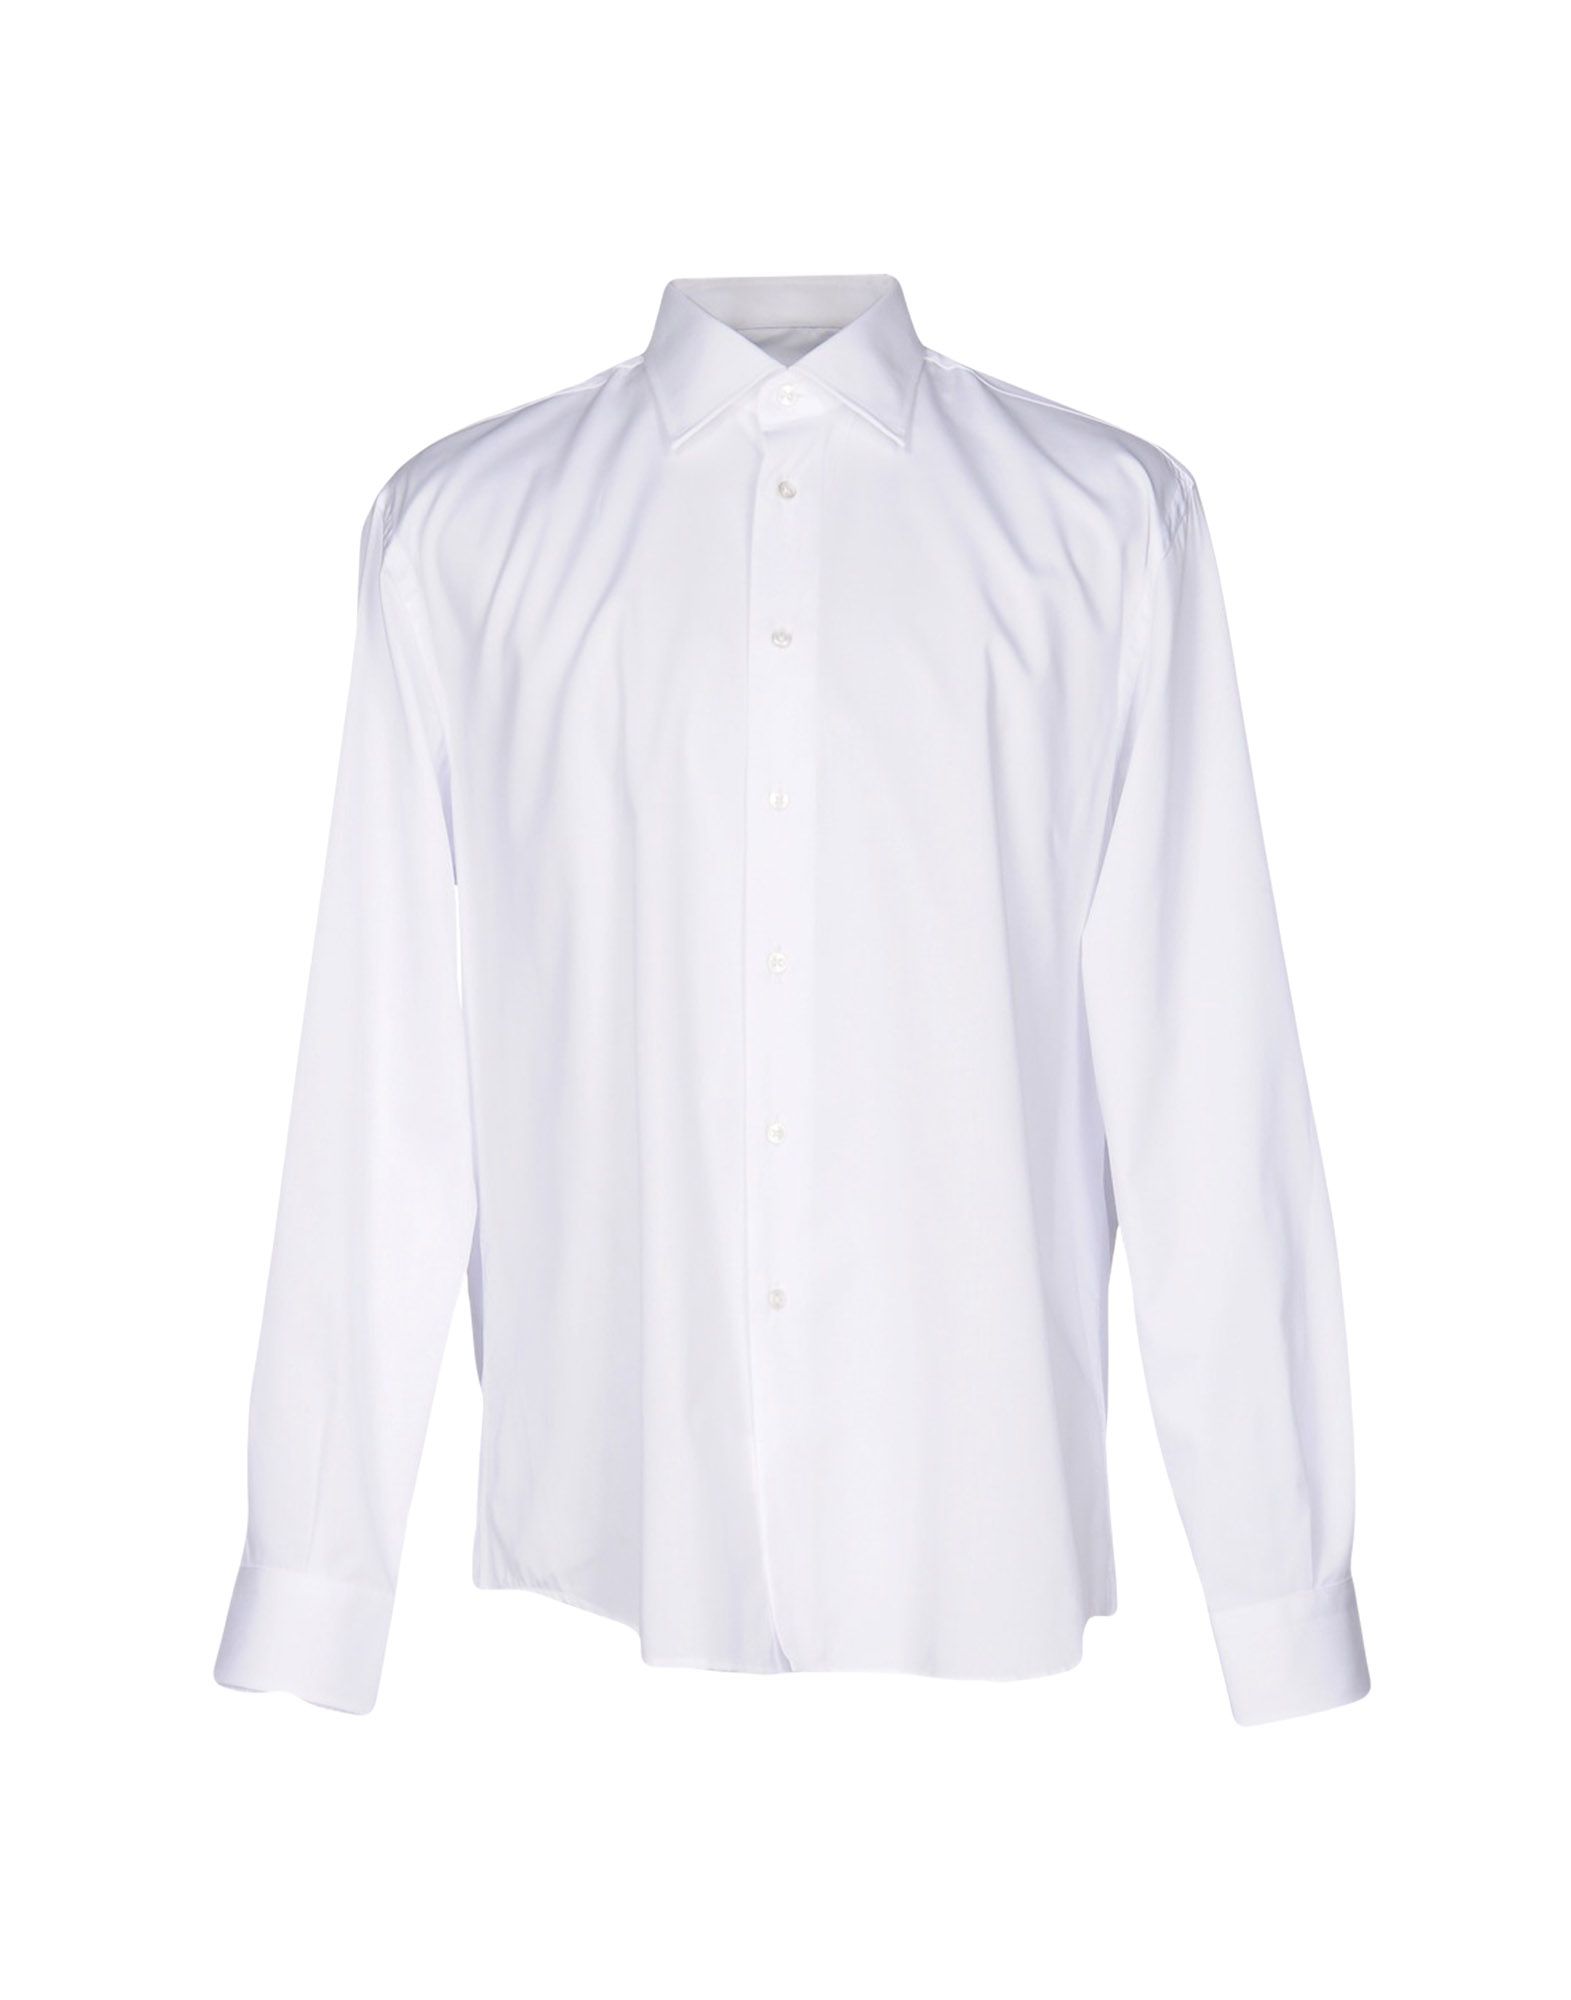 《送料無料》MAURO MALATESTA メンズ シャツ ホワイト XL コットン 100%